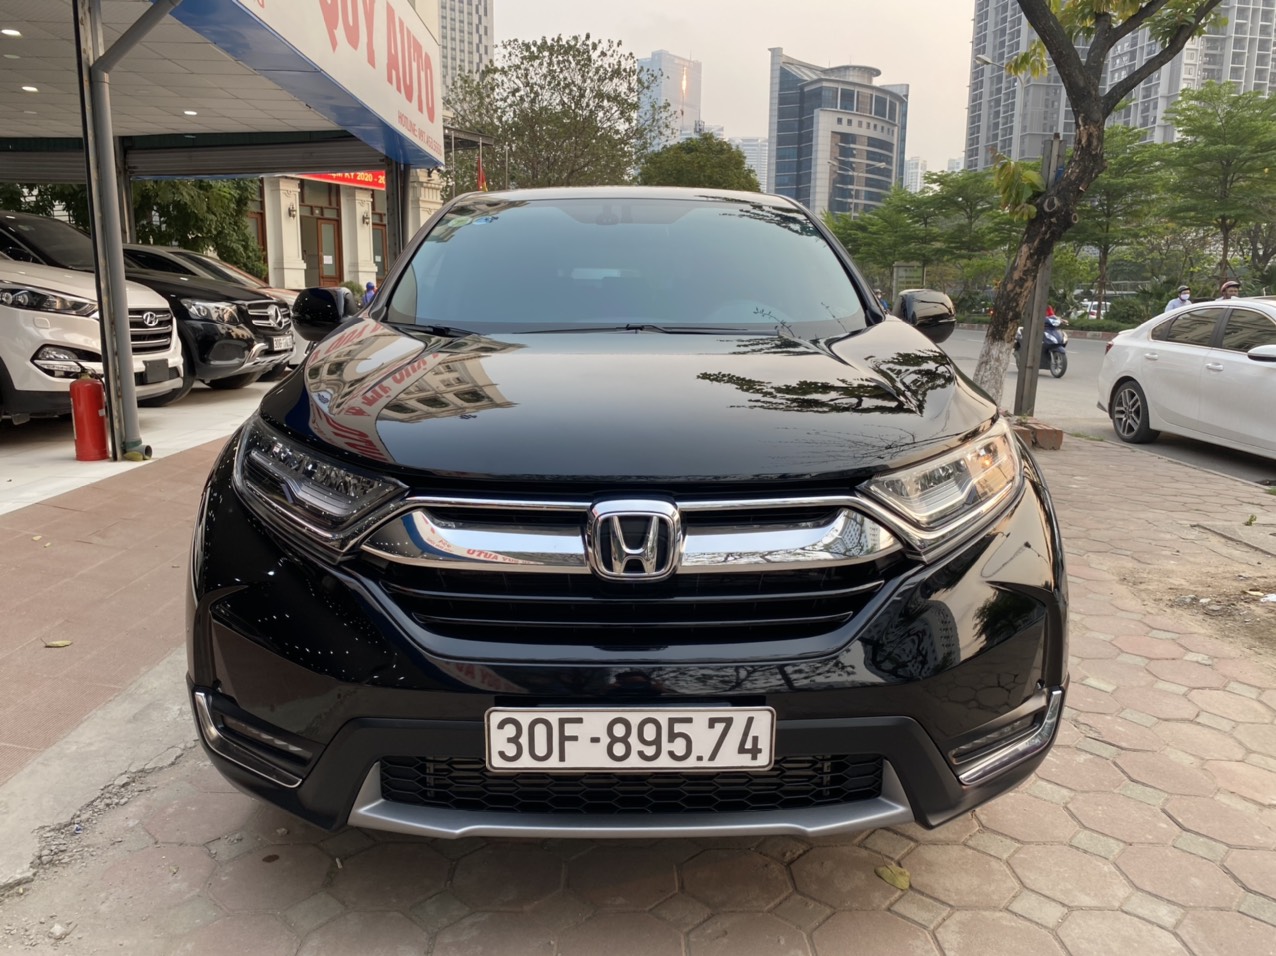 Bán ô tô Honda CRV 2018 Xe cũ Nhập khẩu Số tự động tại Hà Nội Xe cũ Số tự  động tại Hà Nội  otoxehoicom  Mua bán Ô tô Xe